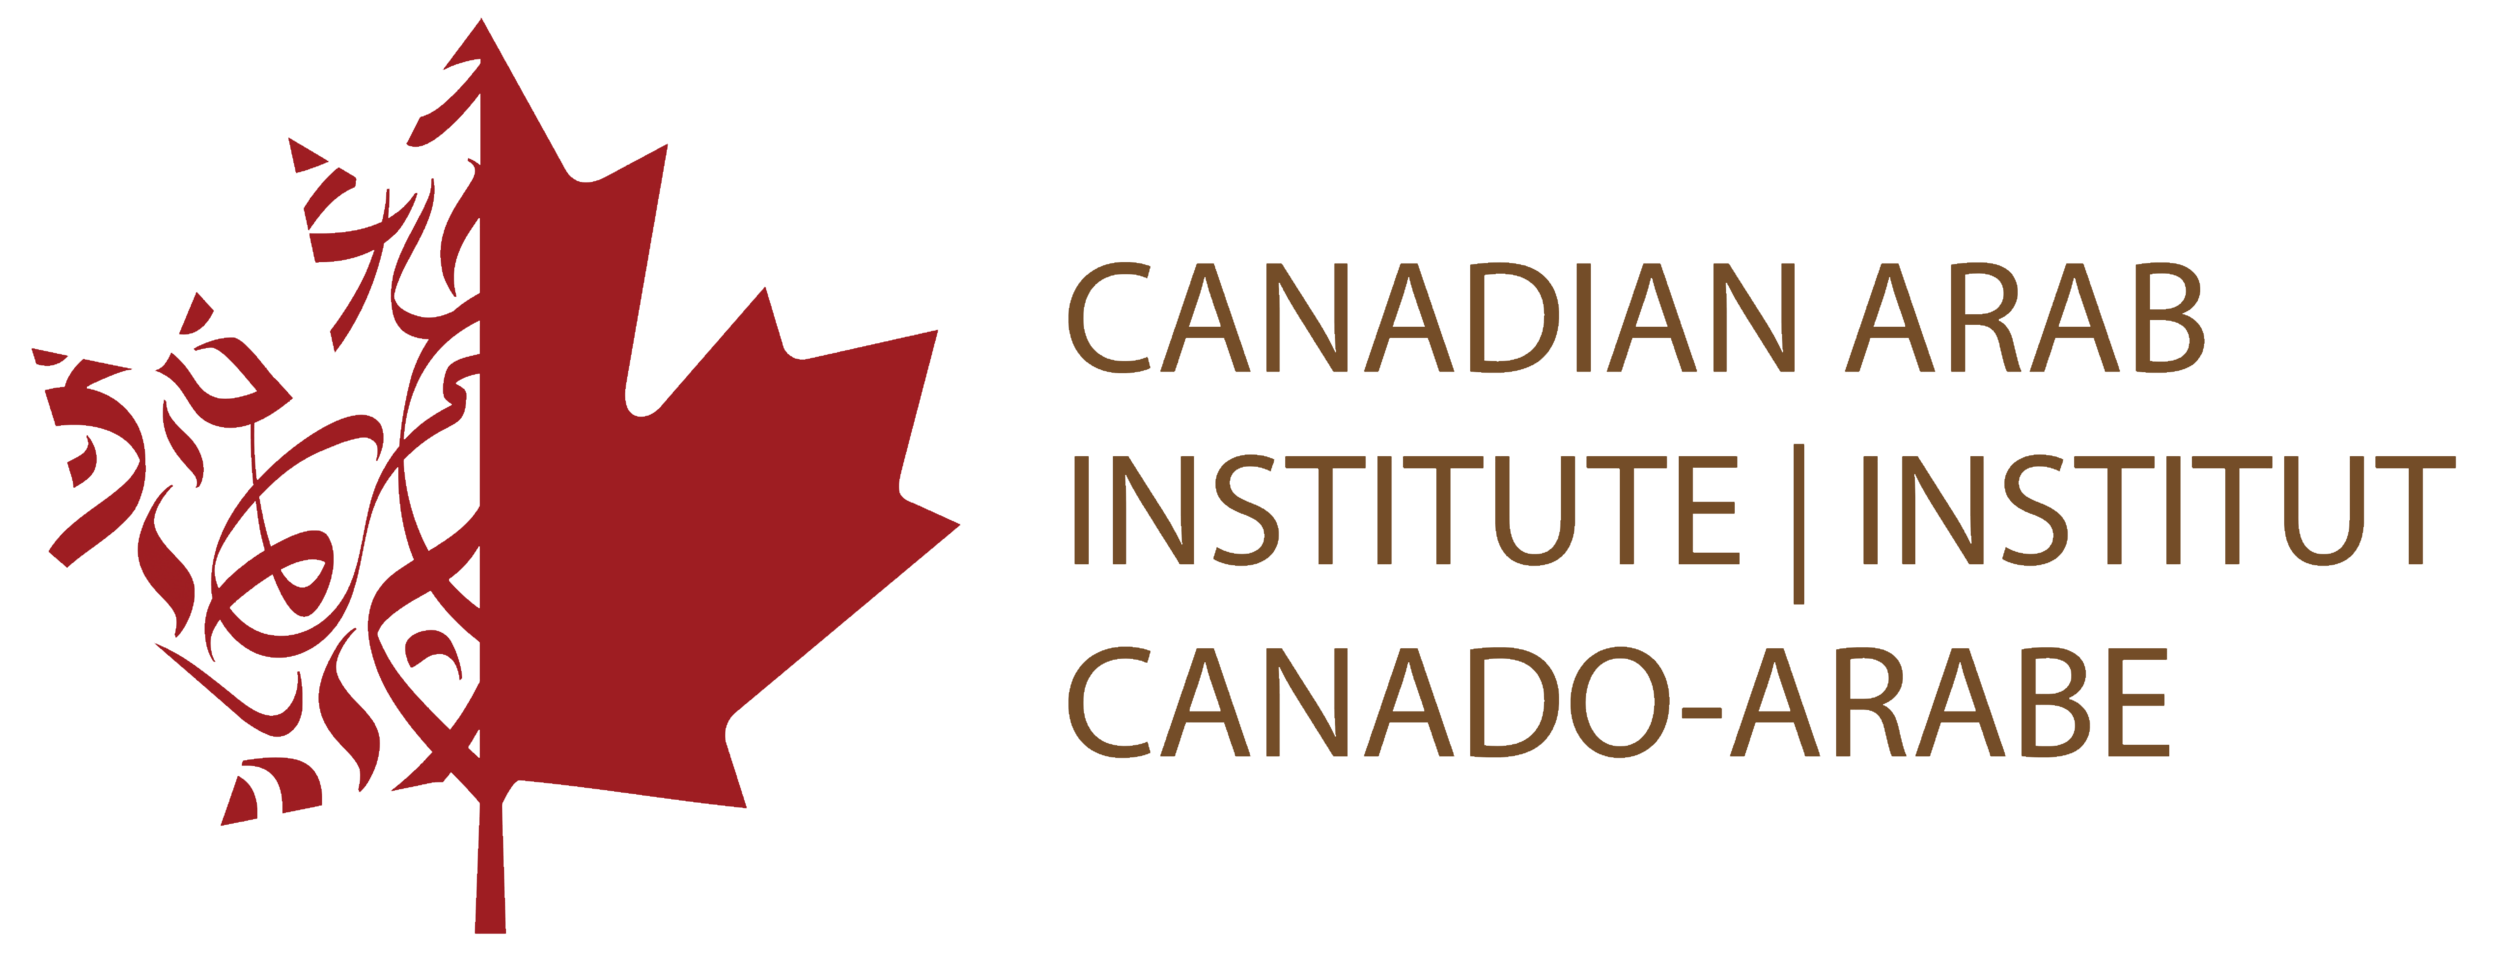 Canadian Arab Institute